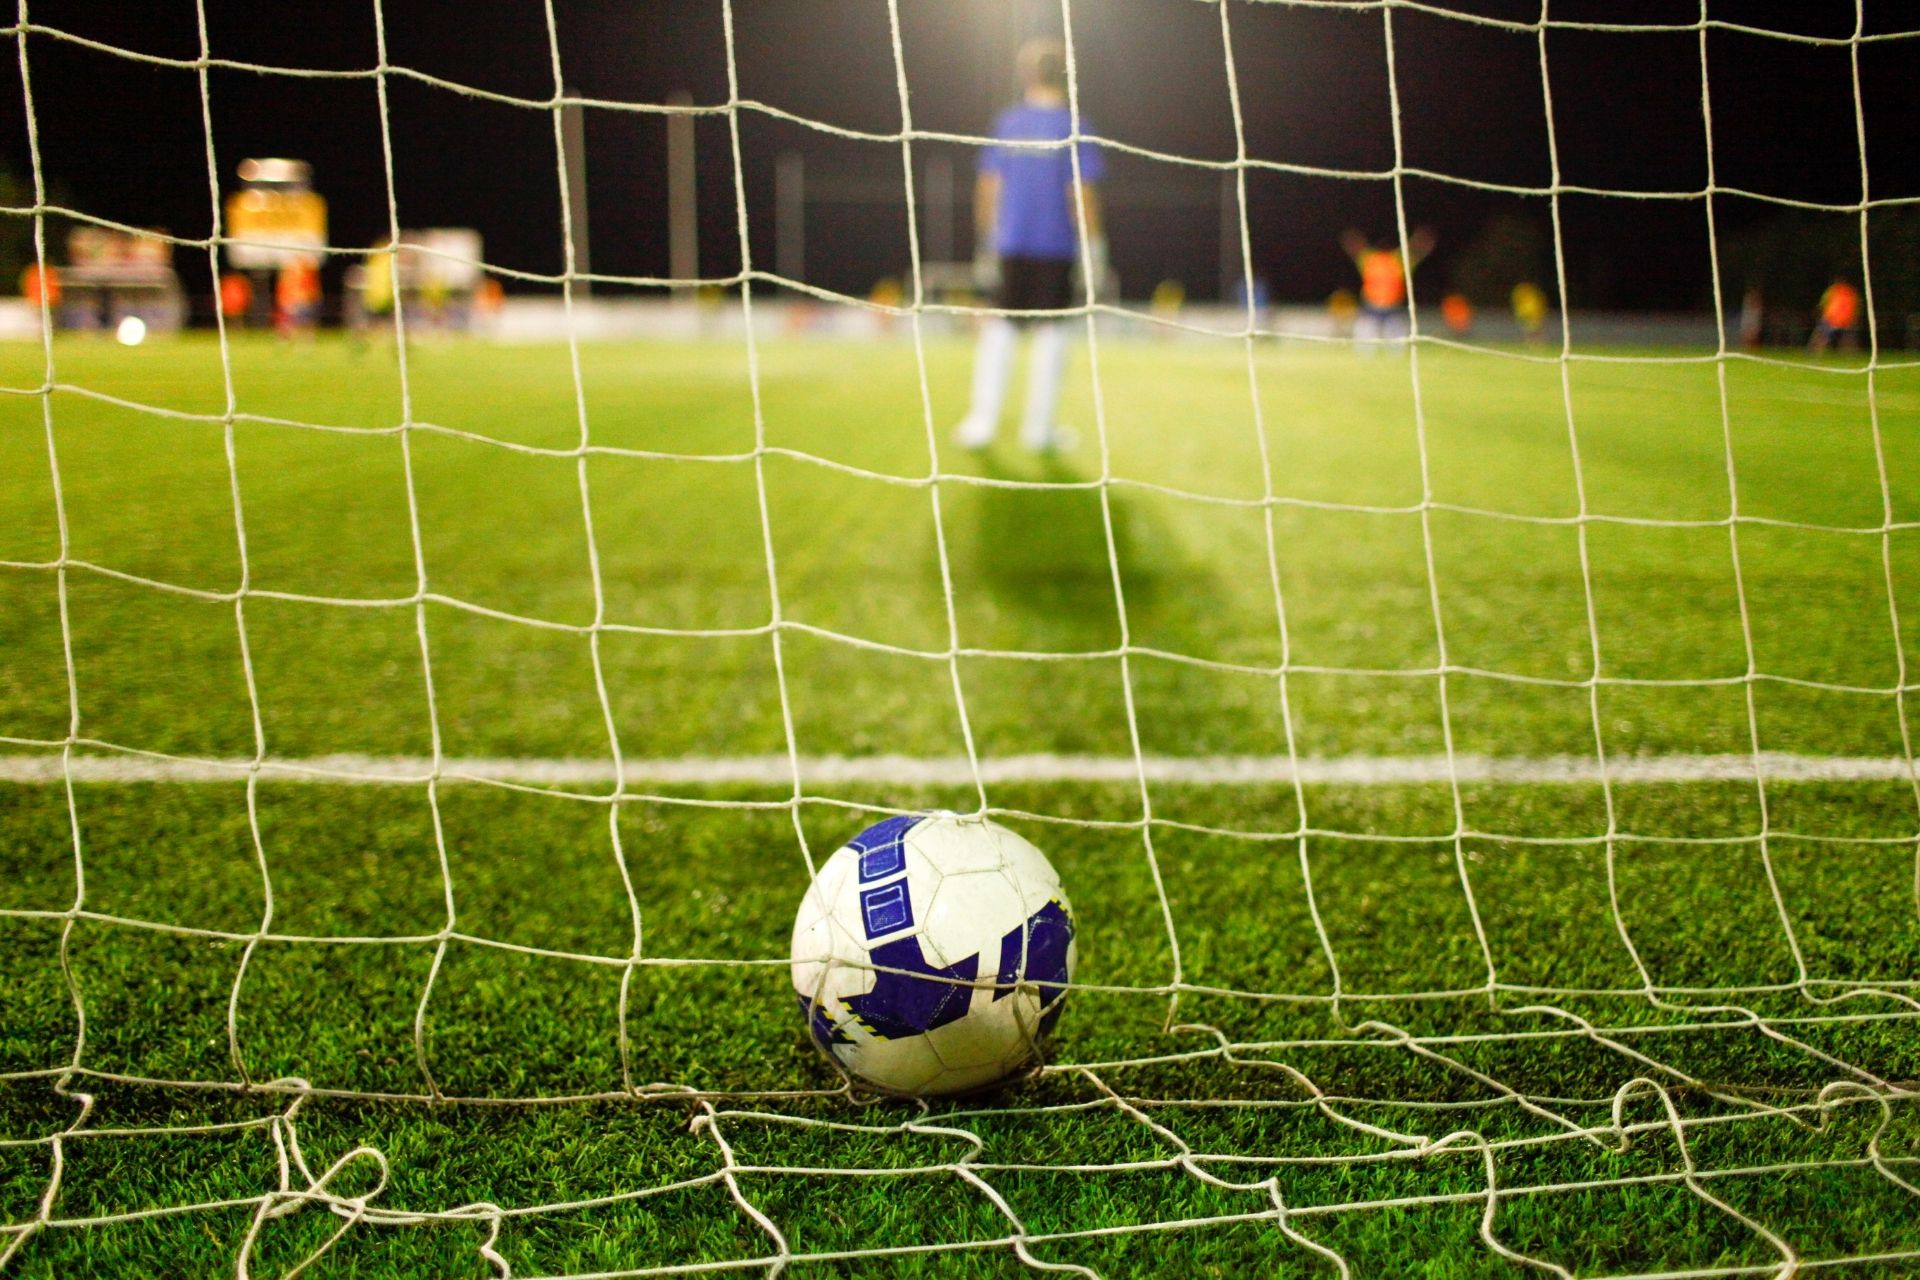 Dnia 2022-03-05 15:00 miało miejsce spotkanie Reading kontra Millwall - wynik 0-1